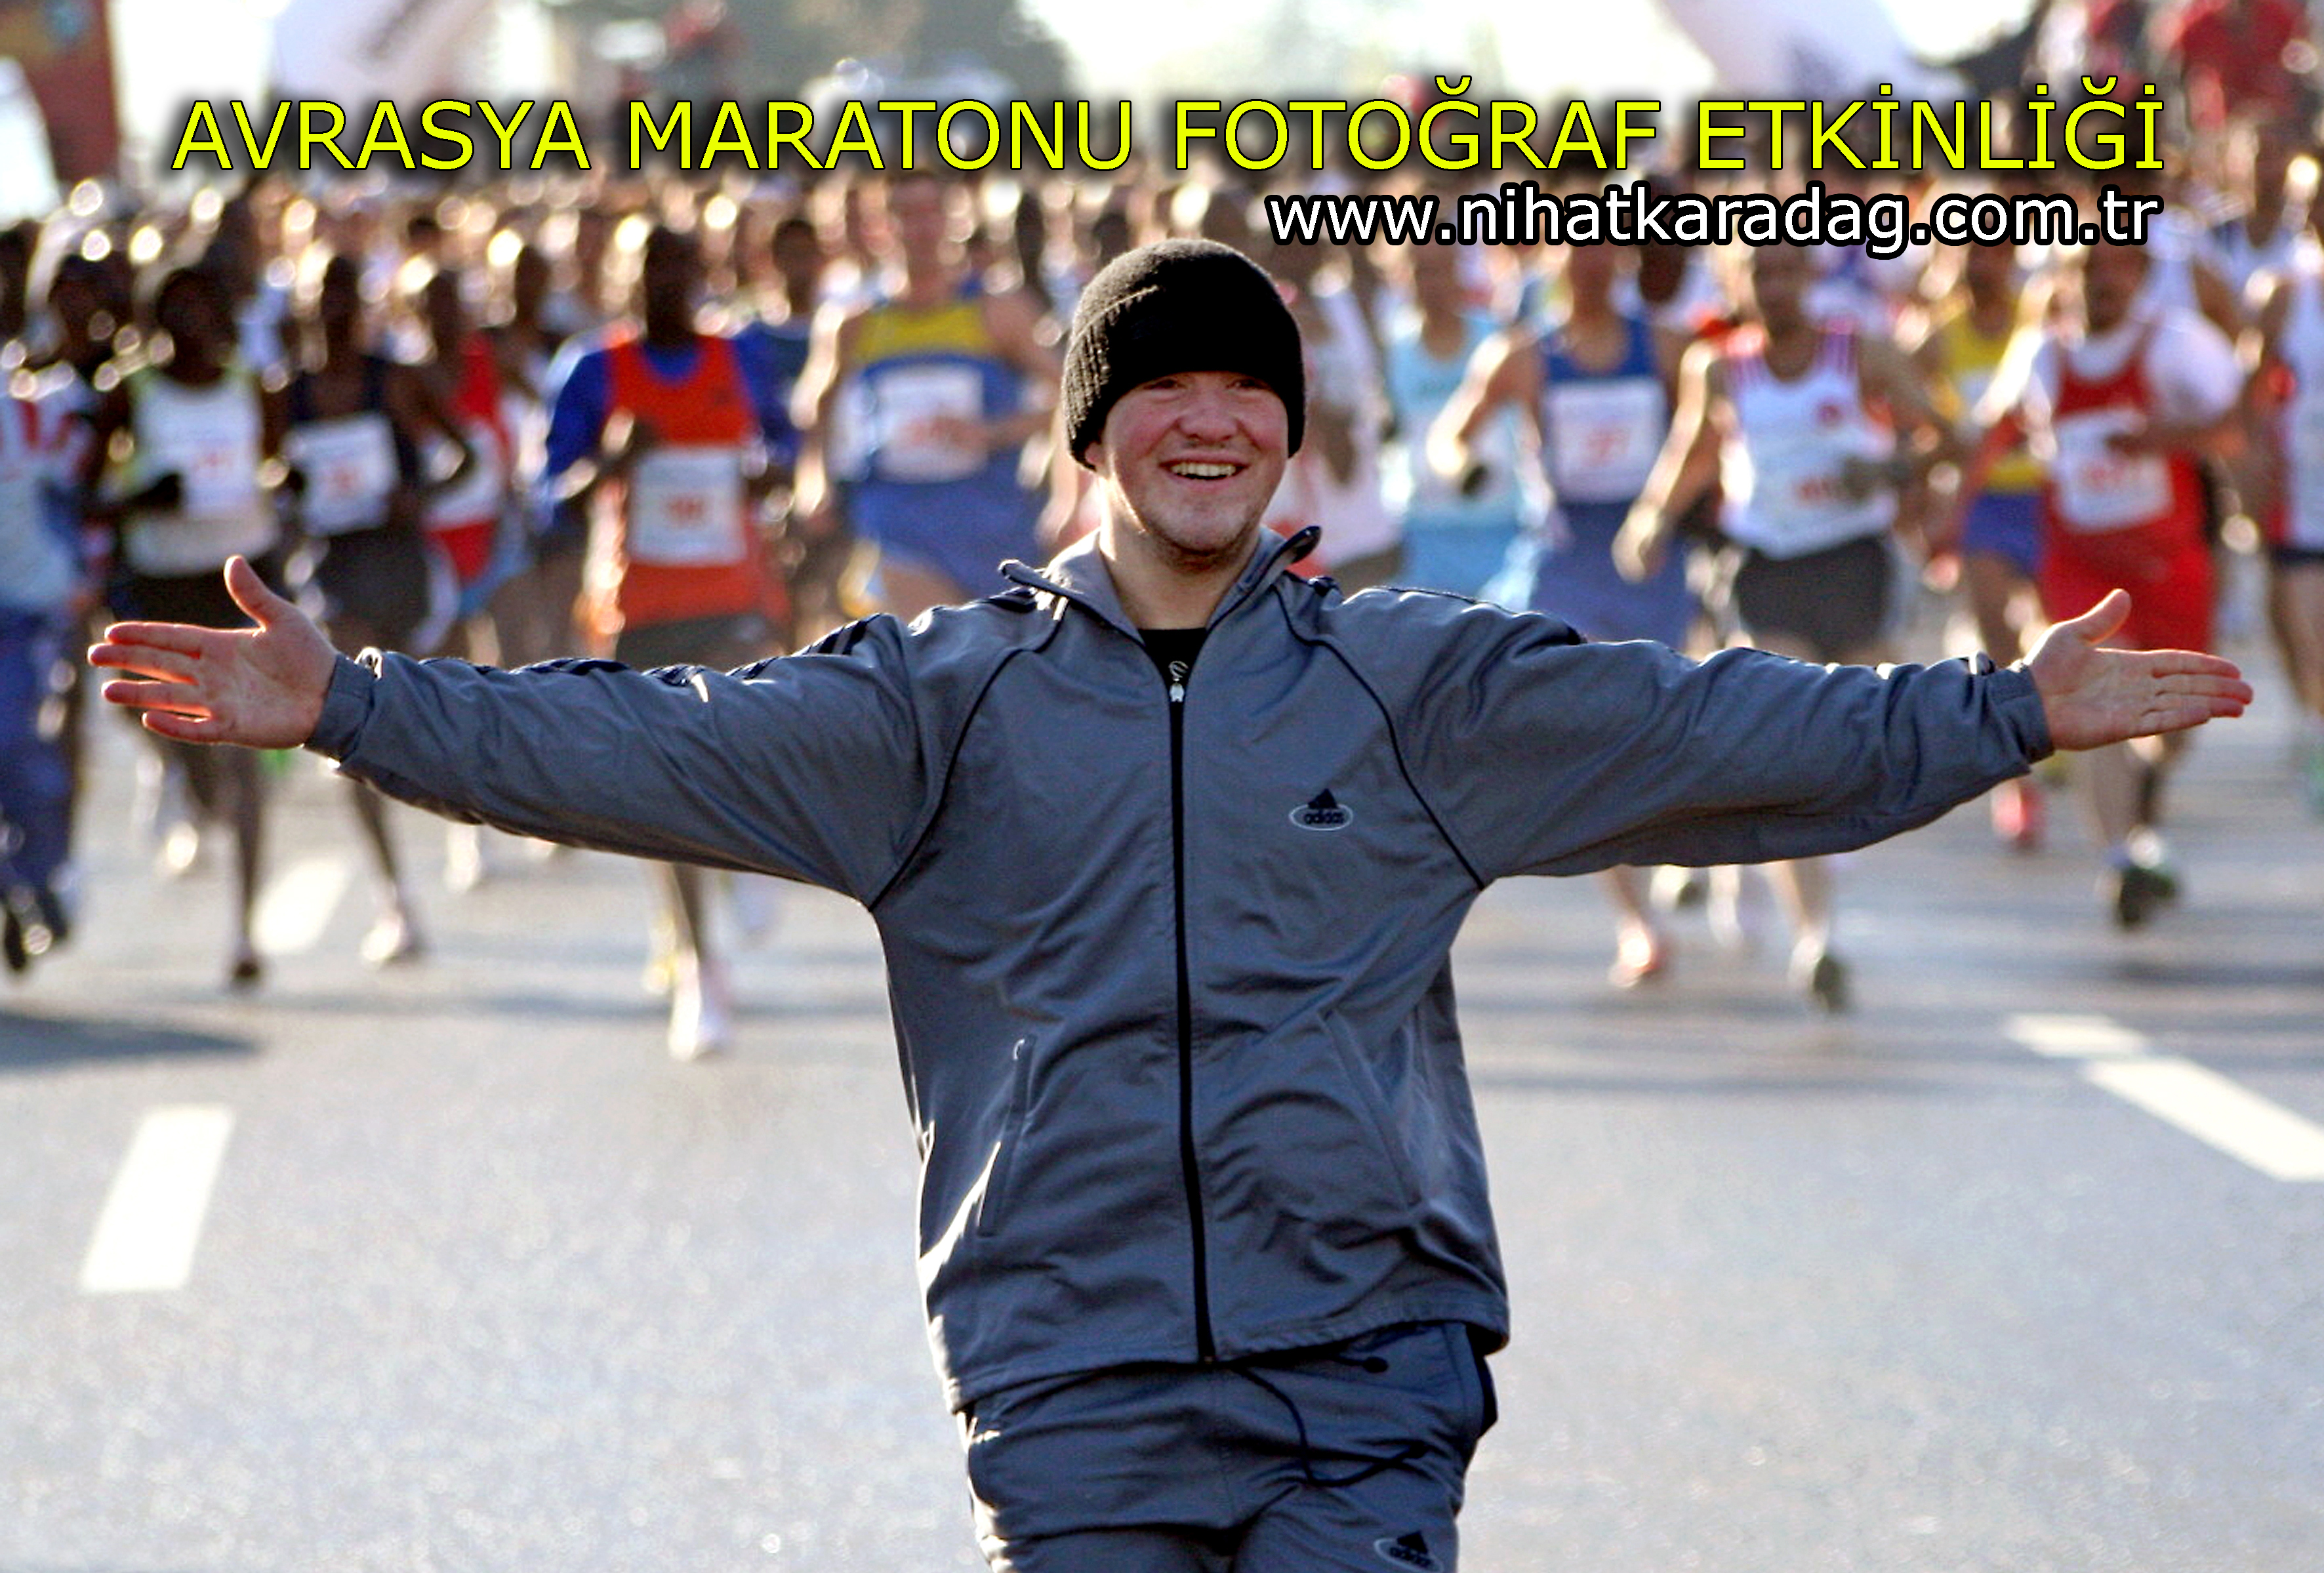 PENTAX ile Avrasya Maratonu Fotoğraf Etkinliği